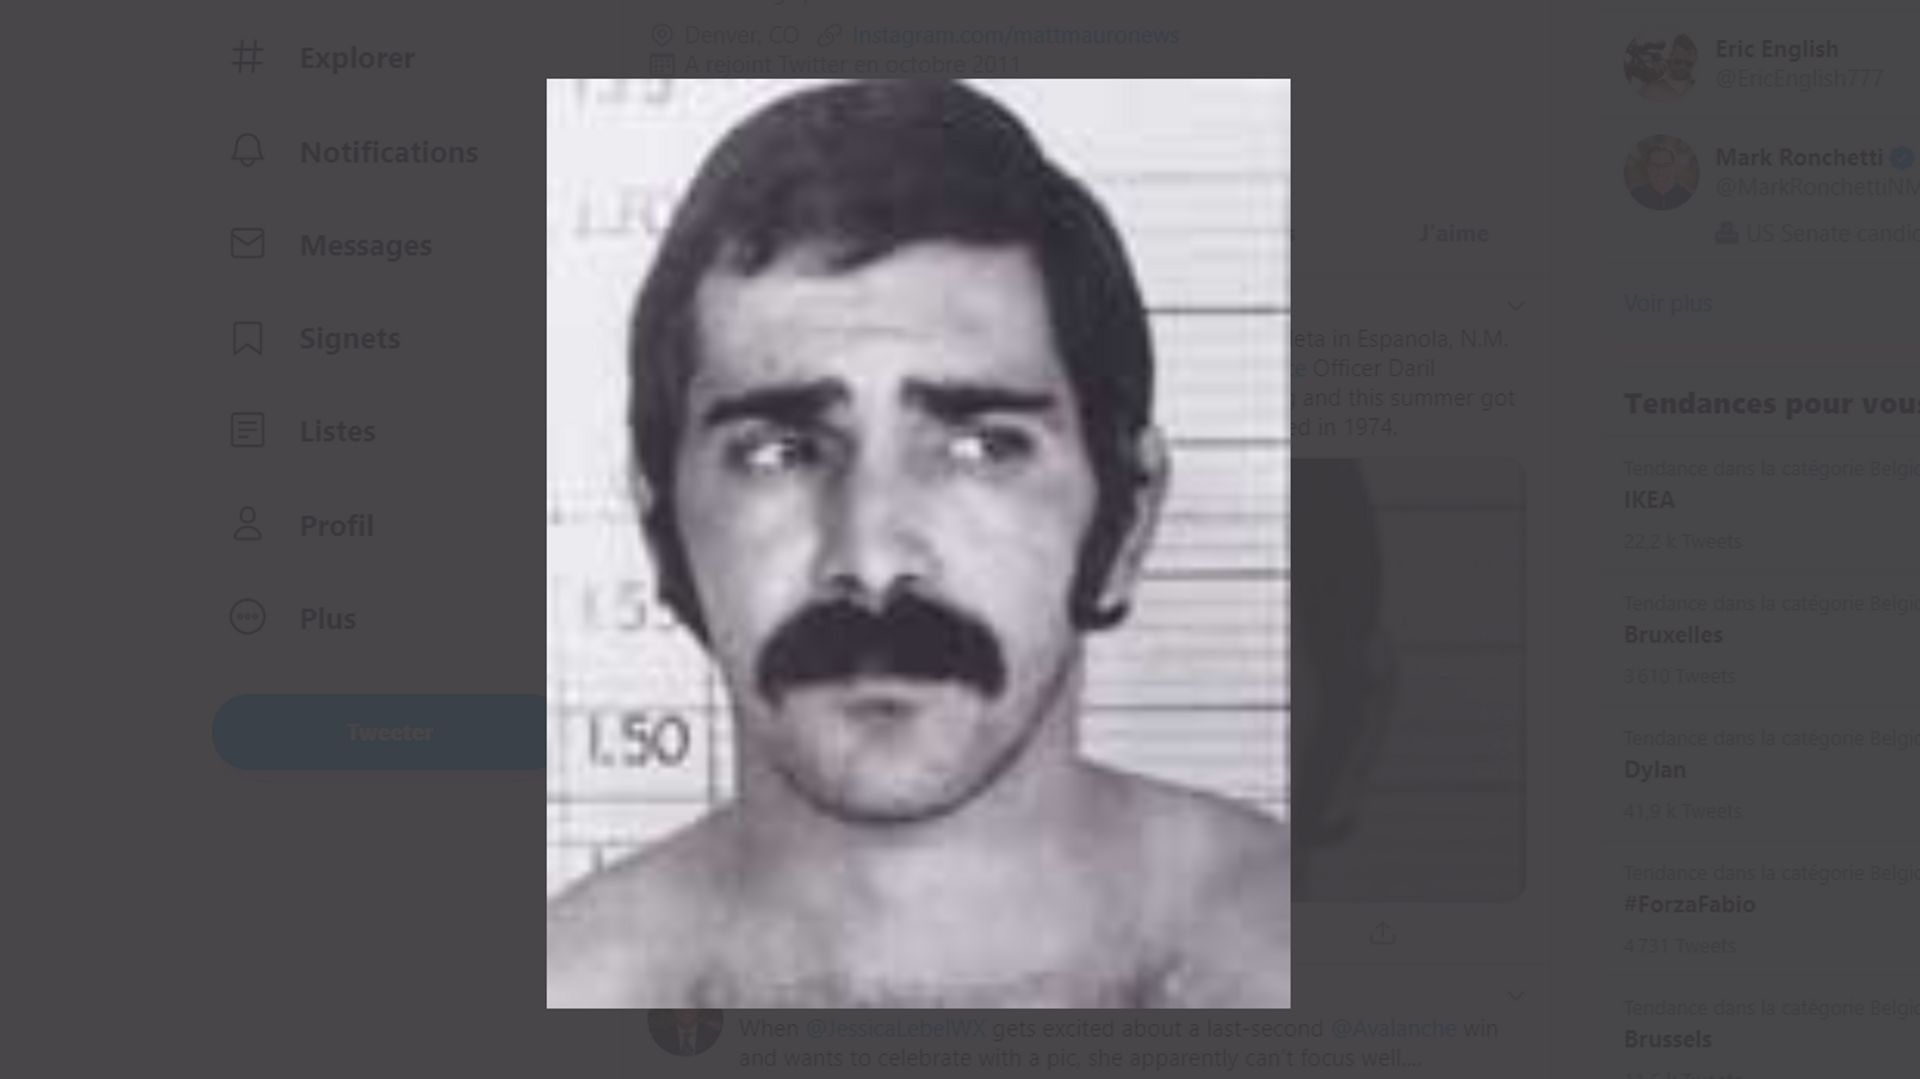 Luis Archuleta s'est échappé d'une prison de l'Etat du Colorado, en 1974